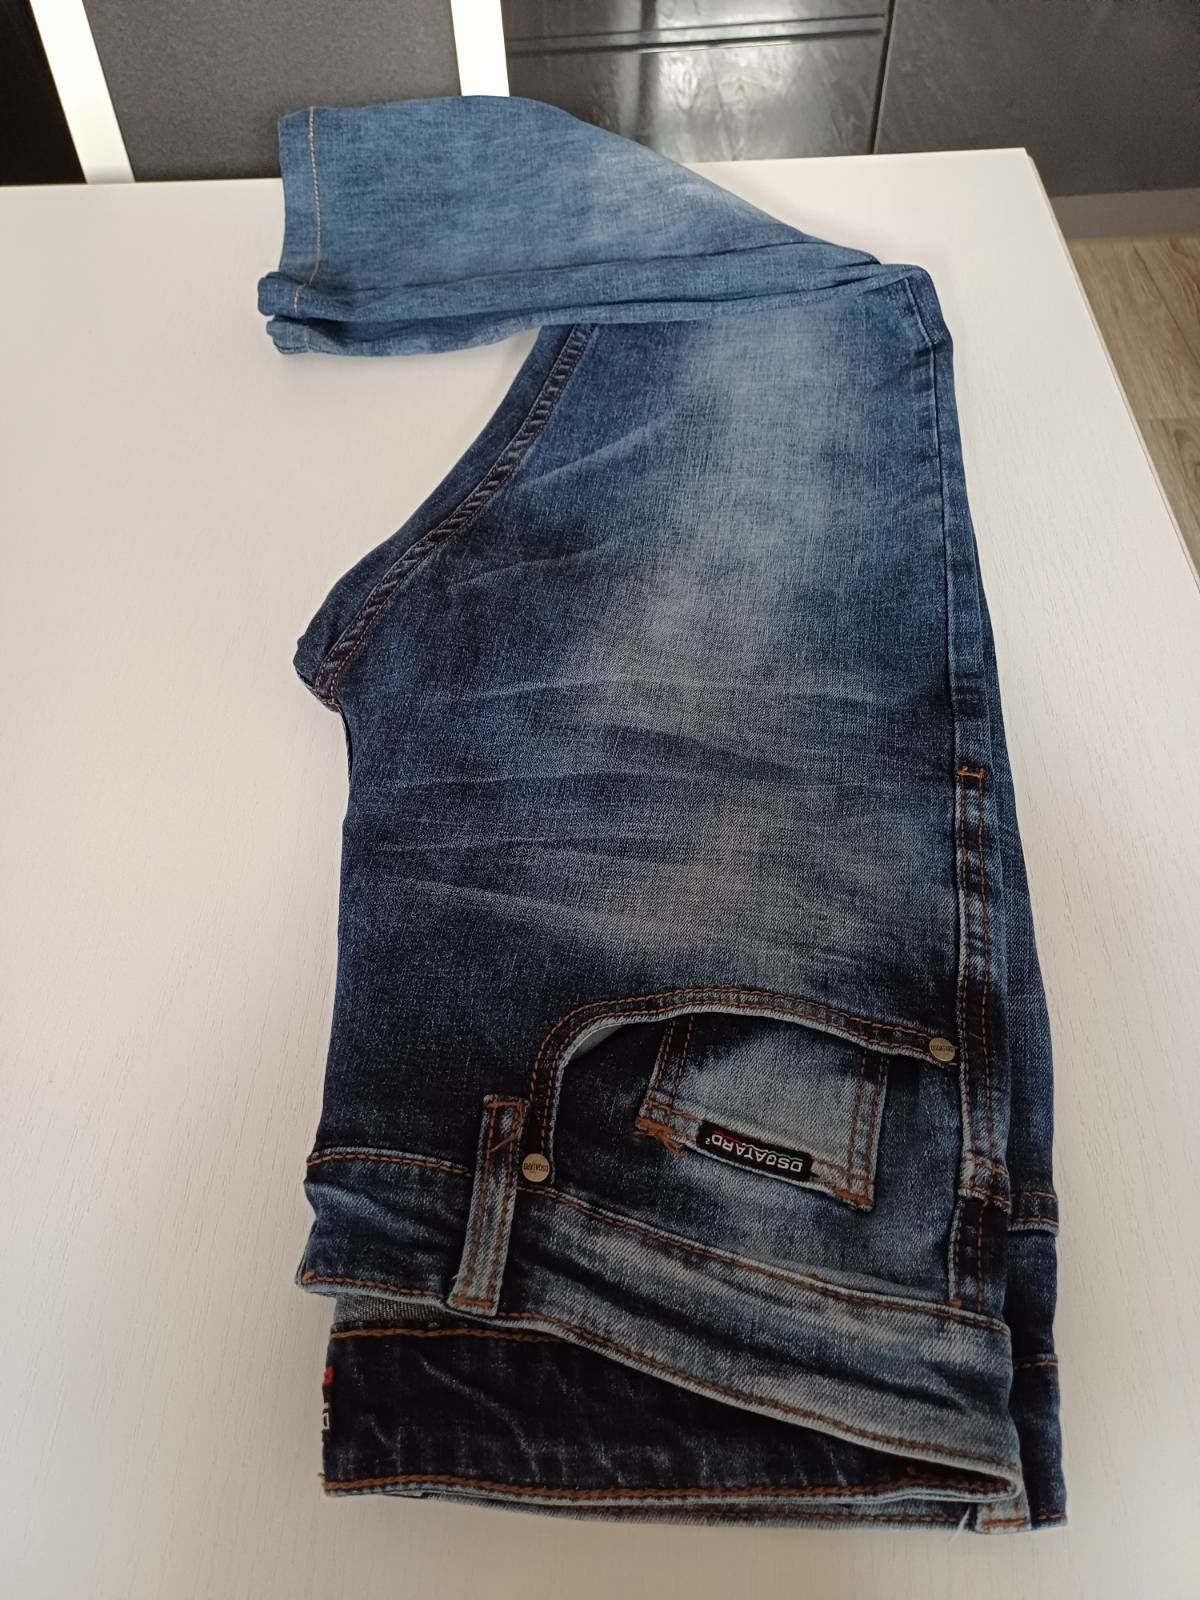 Spodnie unisex niebieski jeans Dsqatard 2 rozm L.